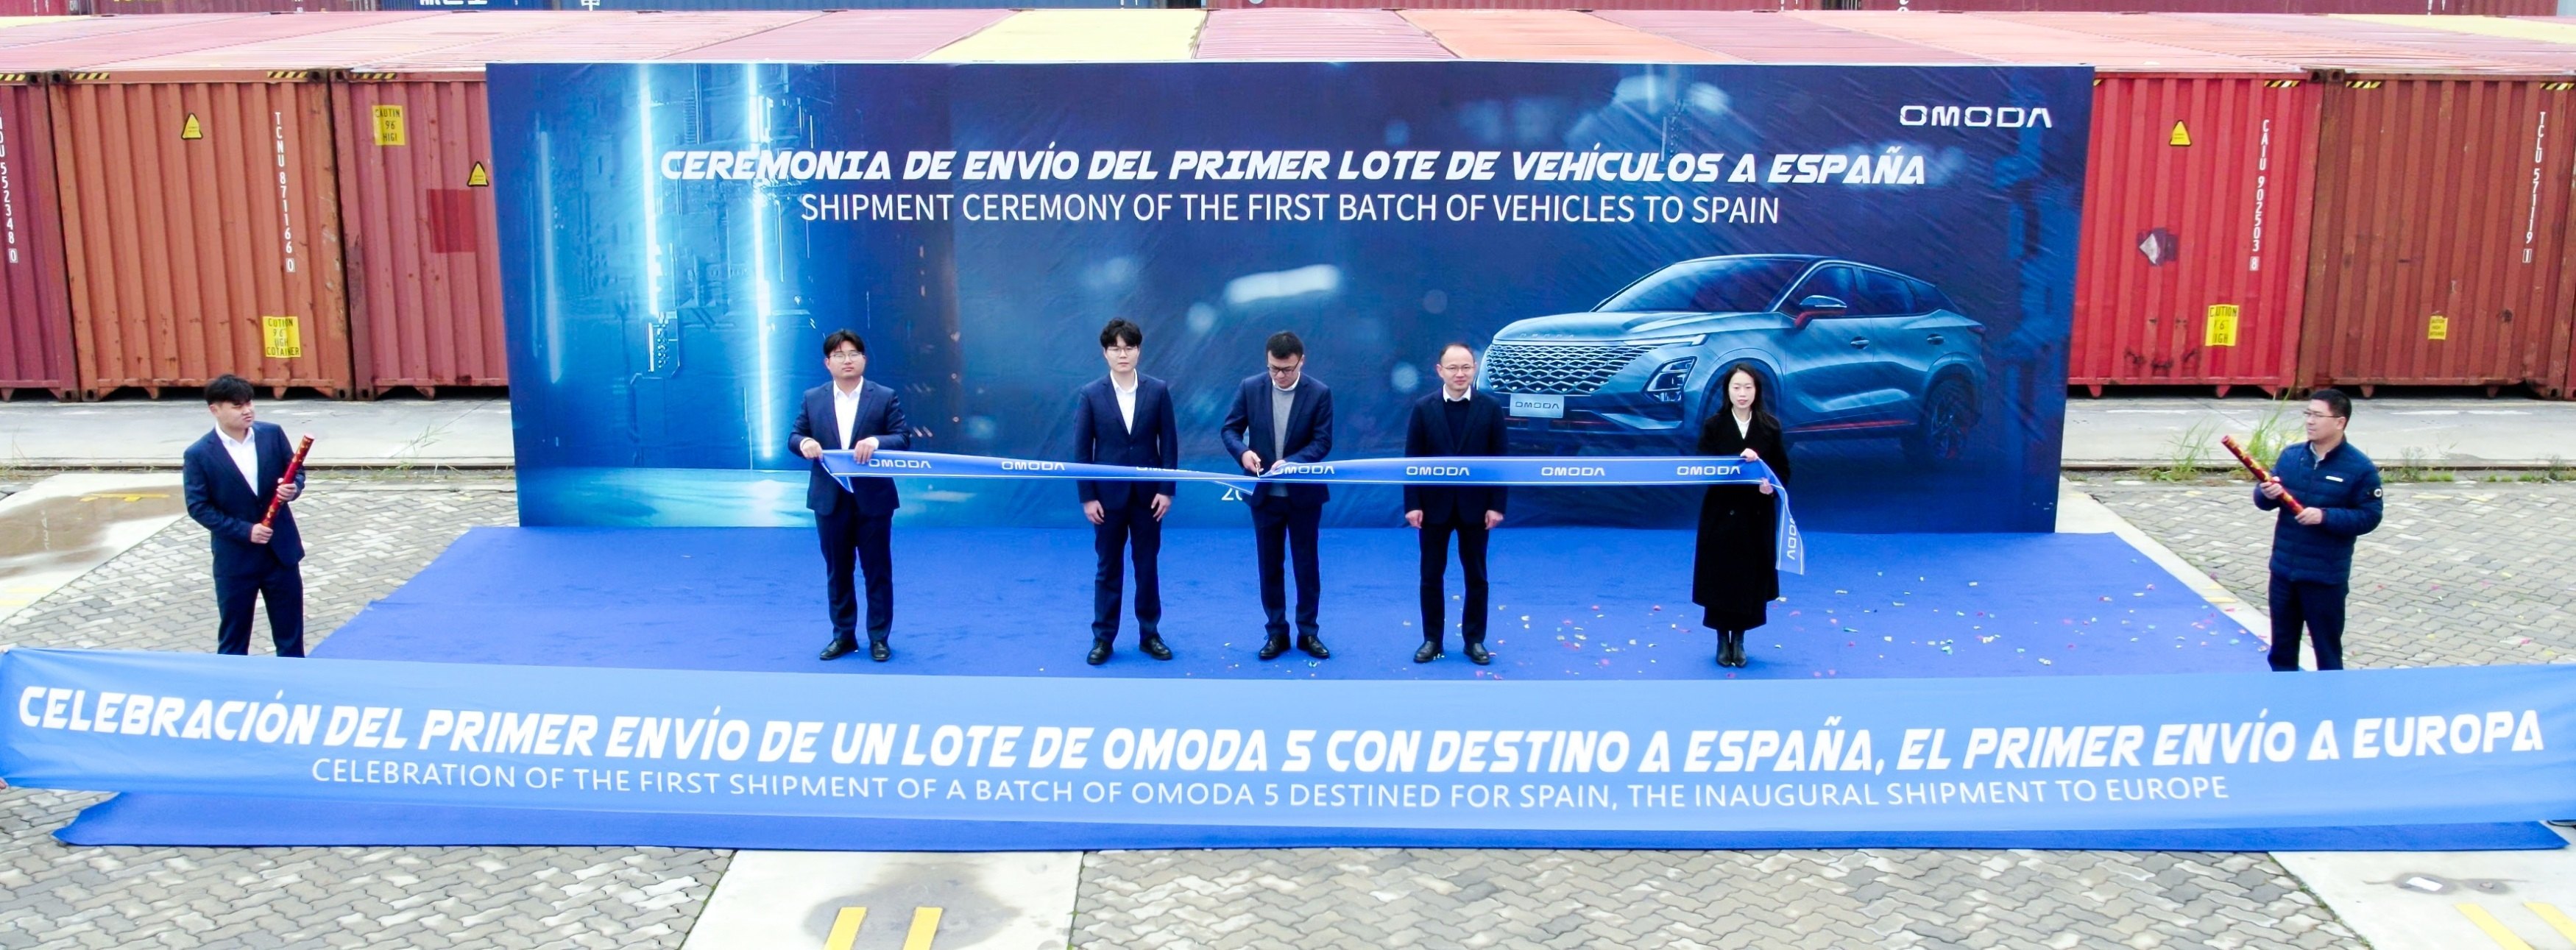 Chery manda los 700 primeros coches a España mientras negocia fabricar en Barcelona